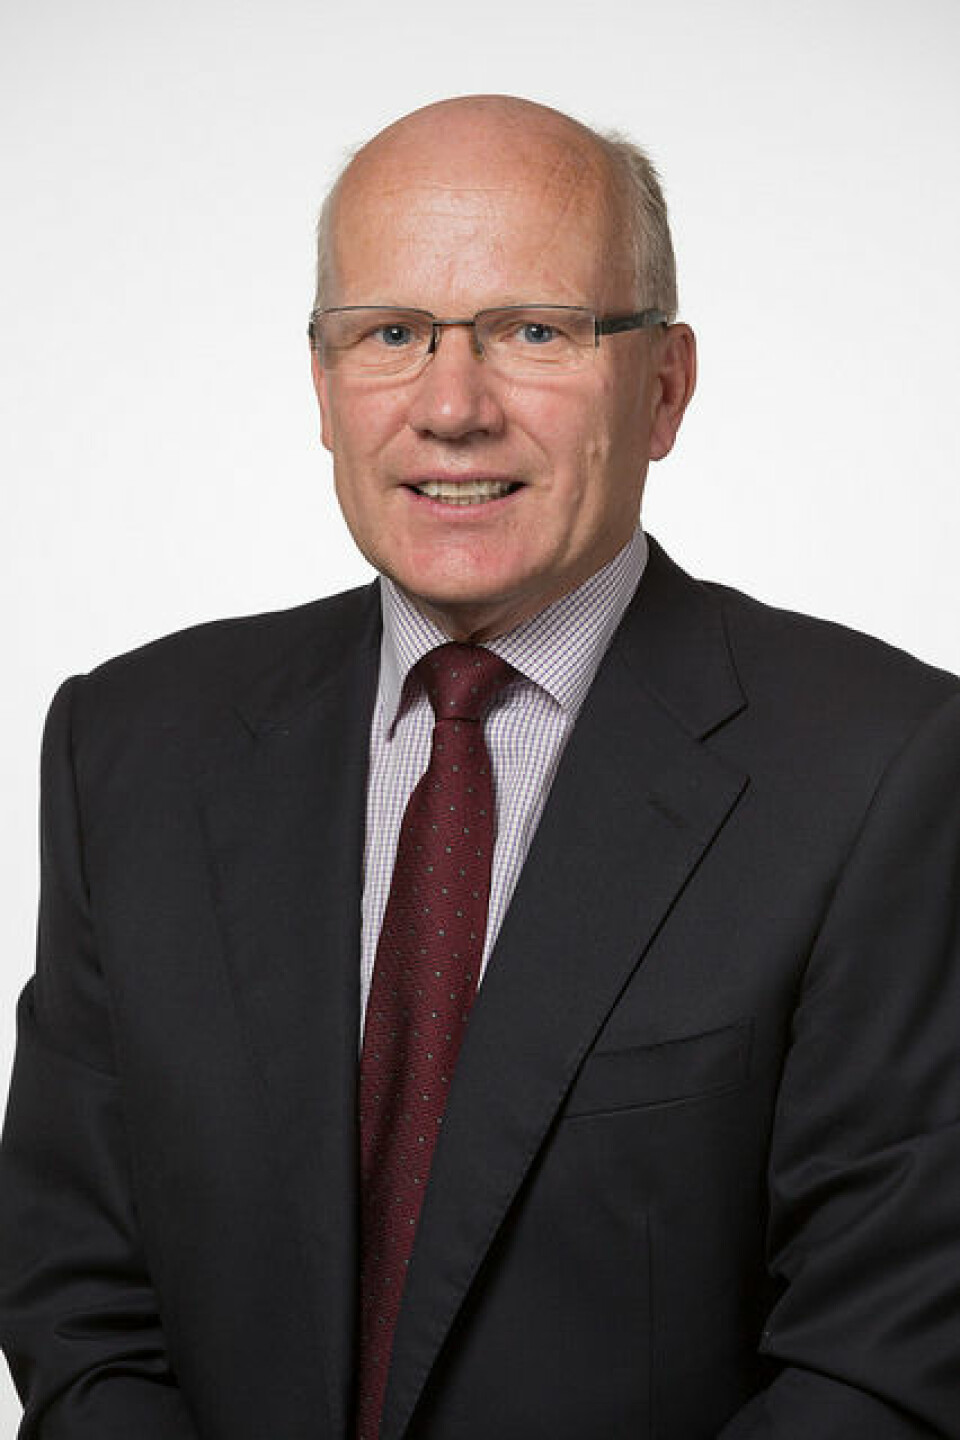 Stortingsrepresentant og medlem av Utenriks- og forsvarskomiteen Hårek Elvenes (Foto: Høyre).